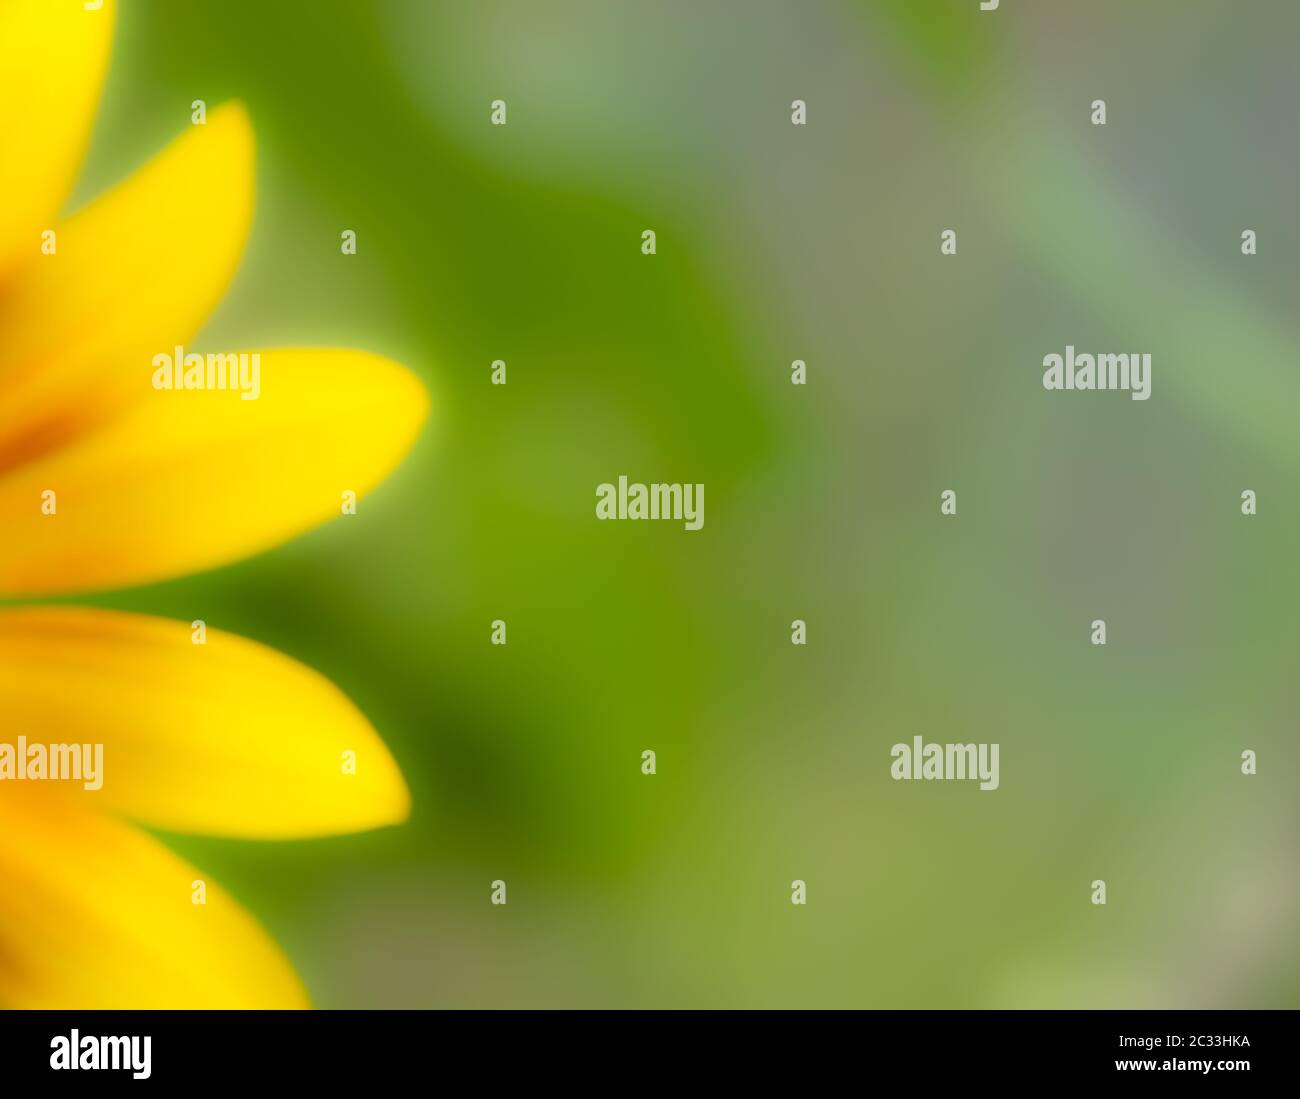 Verschwommenes weiches Bild von gelben Sonnenblumenblättern auf natürlichem grünen Hintergrund. Viel Platz für Ihre Nachricht oder Ankündigung. Stockfoto